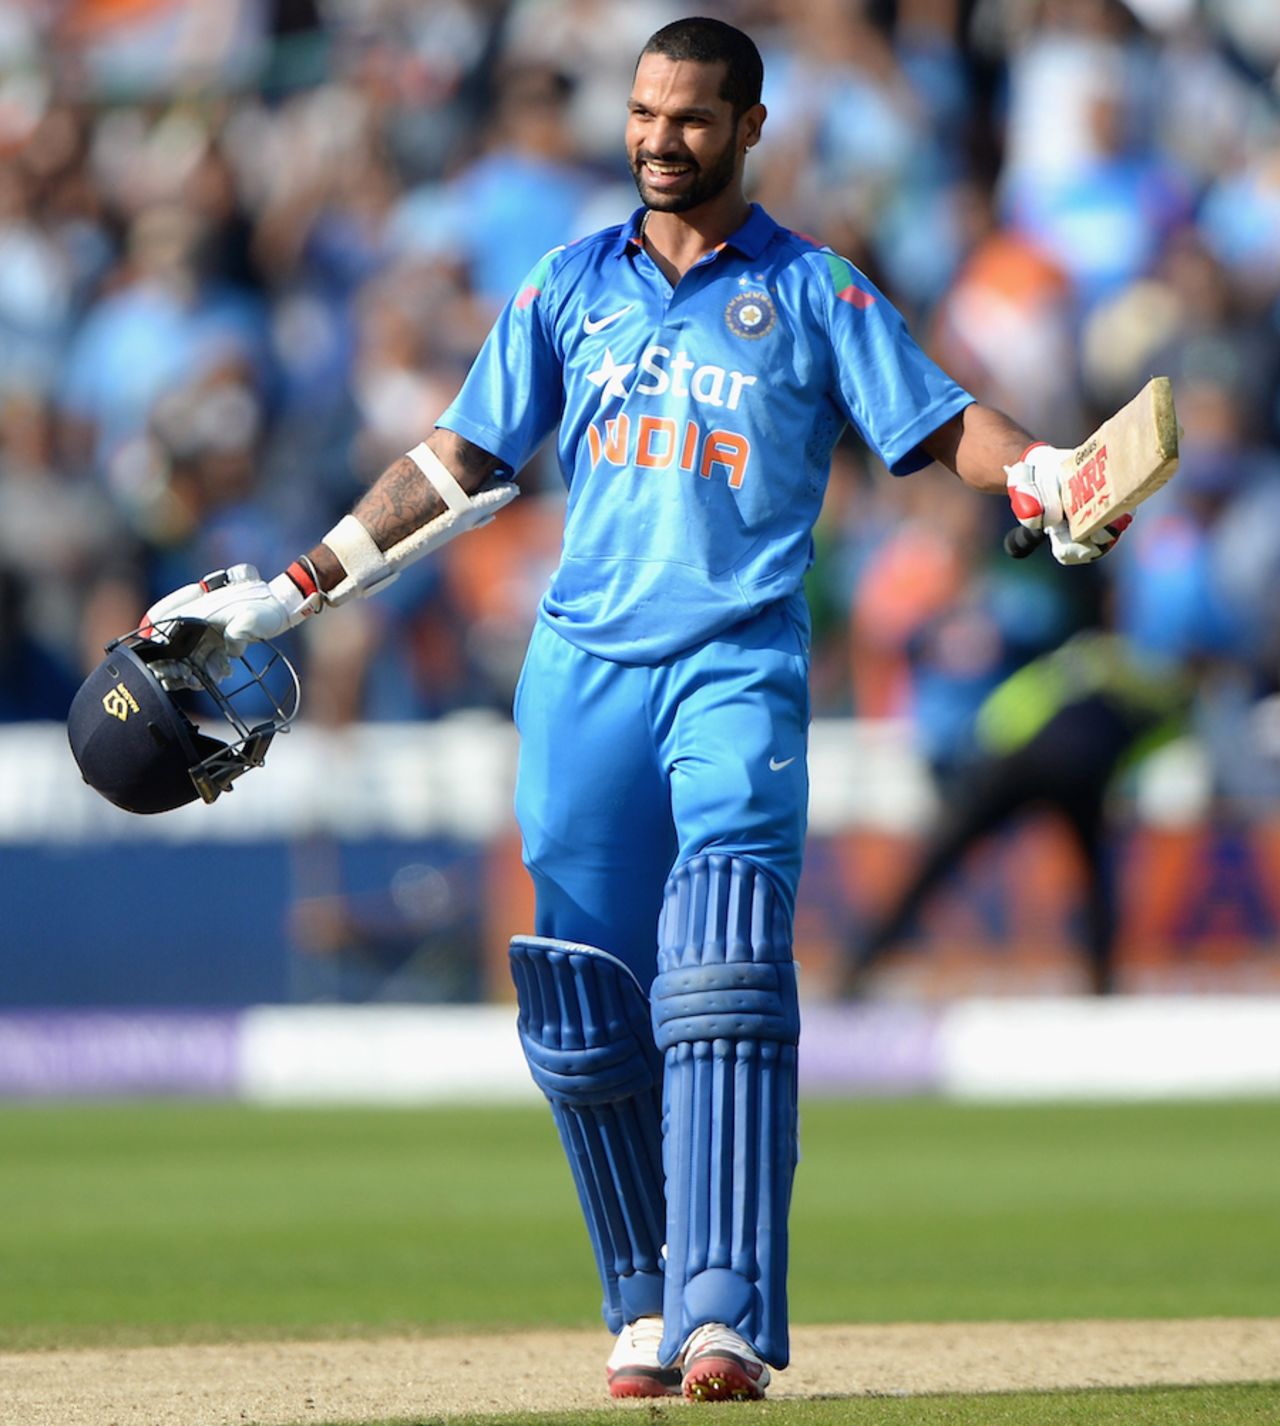 Shikhar Dhawan sealed India's win with a six, England v India, 4th ODI, Edgbaston, September 2, 2014